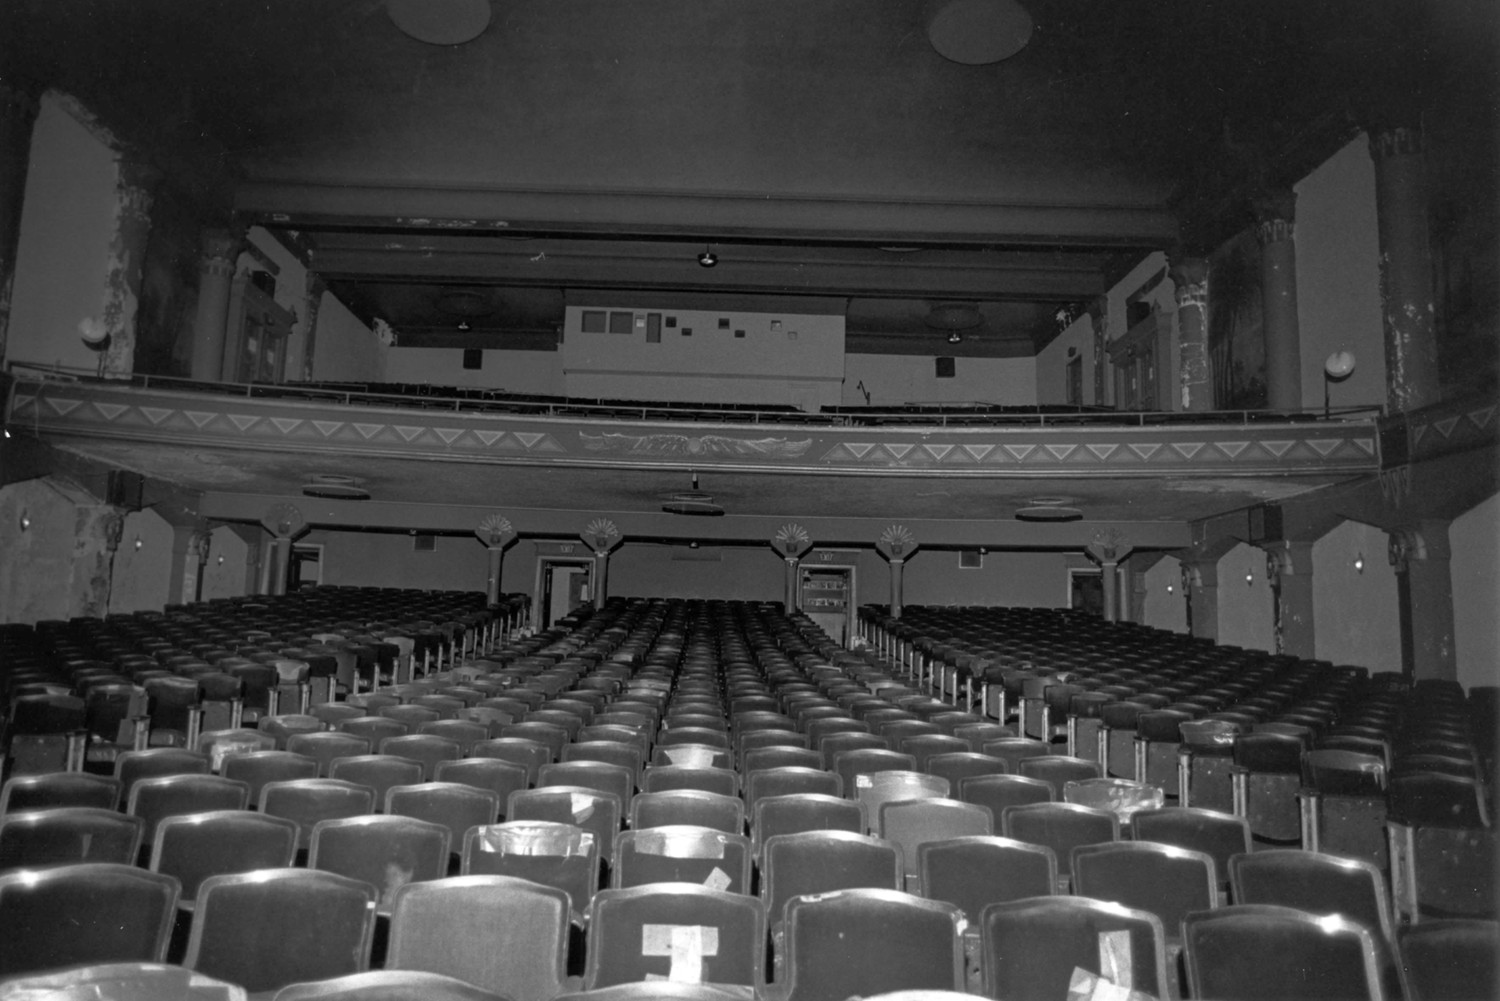 Egyptian Theatre, DeKalb Illinois Auditorium (1978)